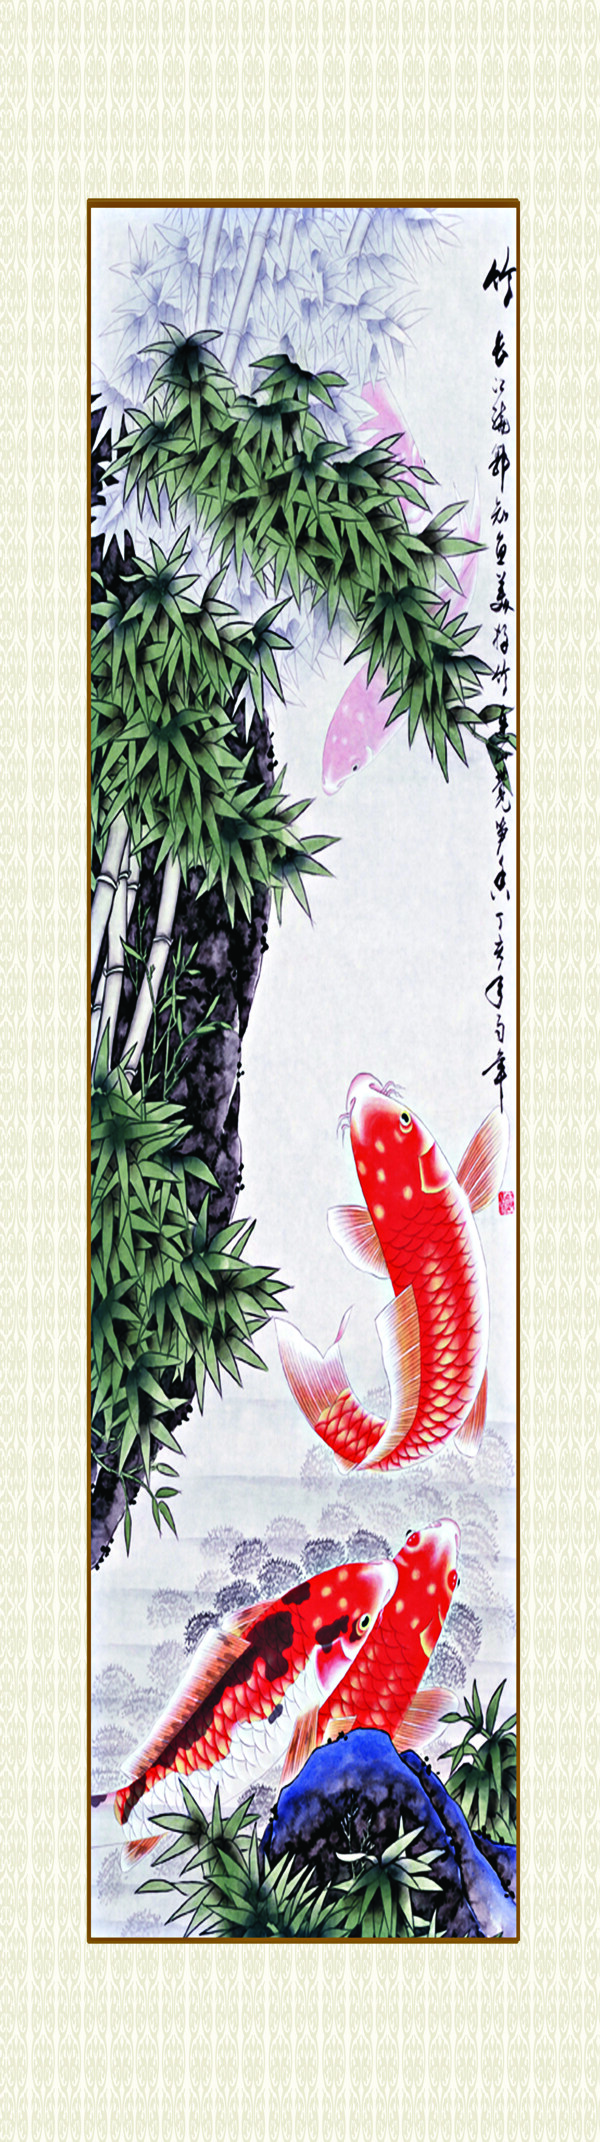 国画竹子鲤鱼